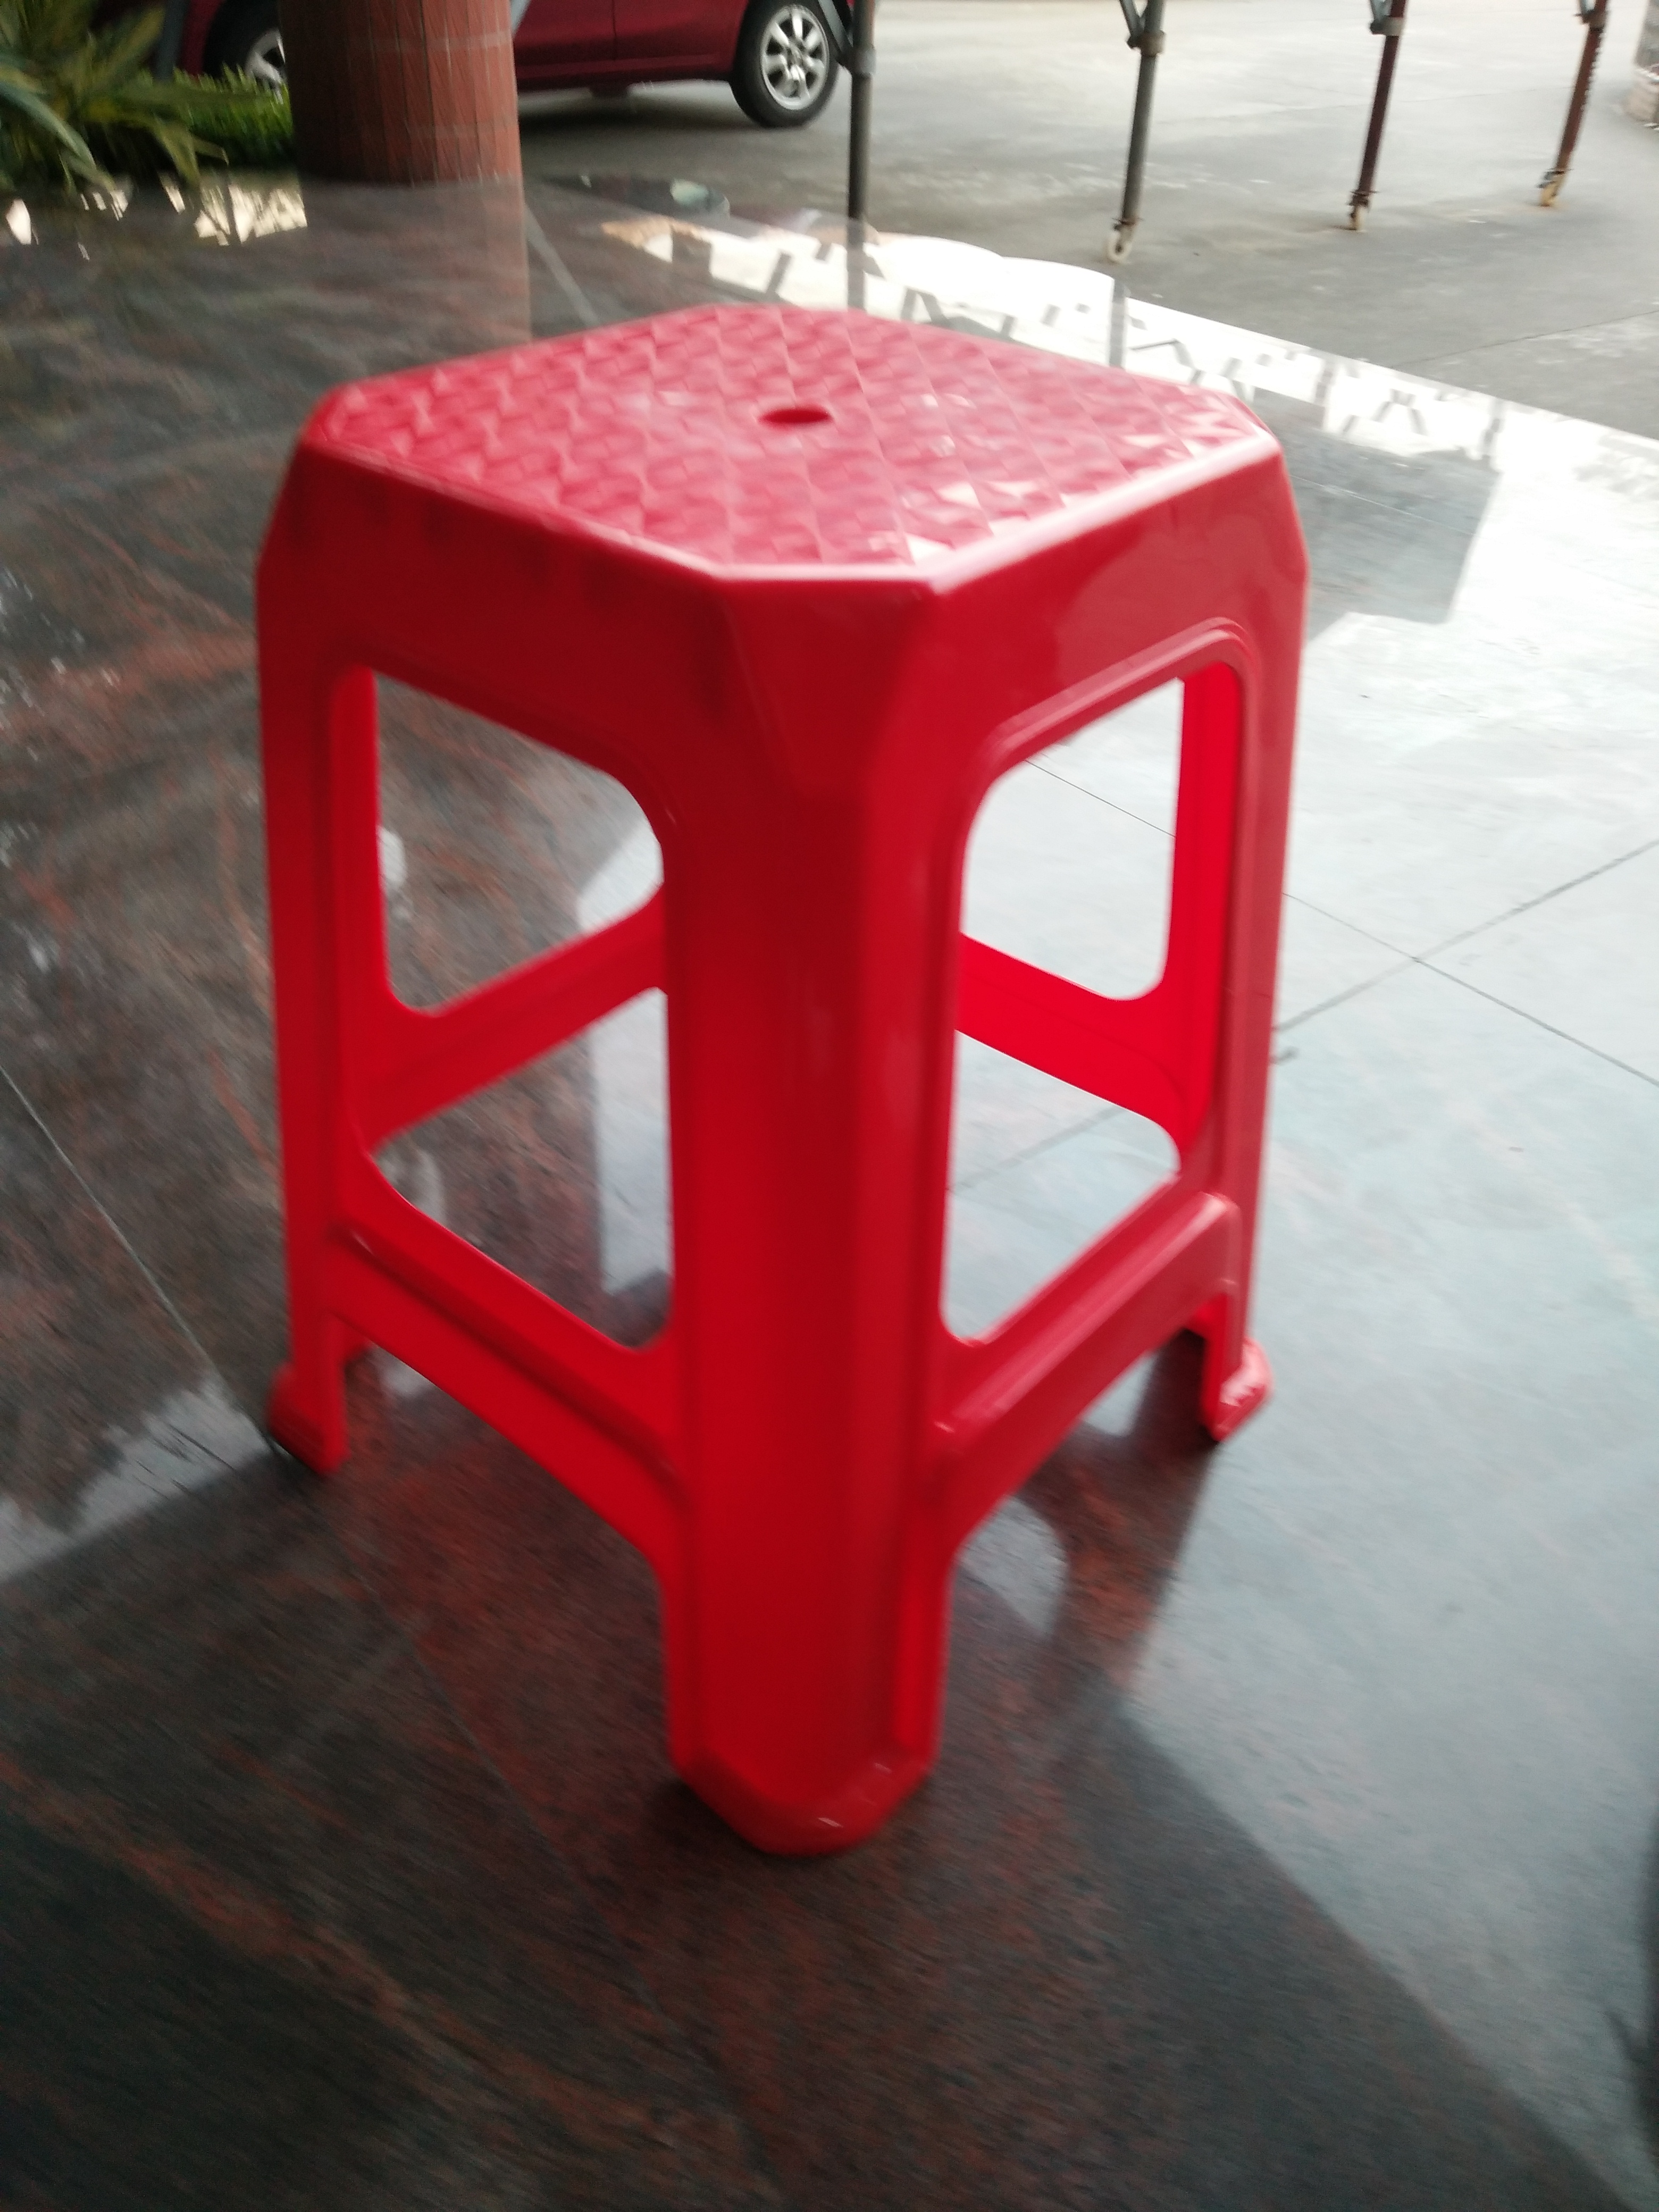 佛山红色加厚塑料方凳生产厂家 蓝色塑胶方凳 塑胶方凳厂家直销 佛山蓝色加厚塑料方凳生产厂家